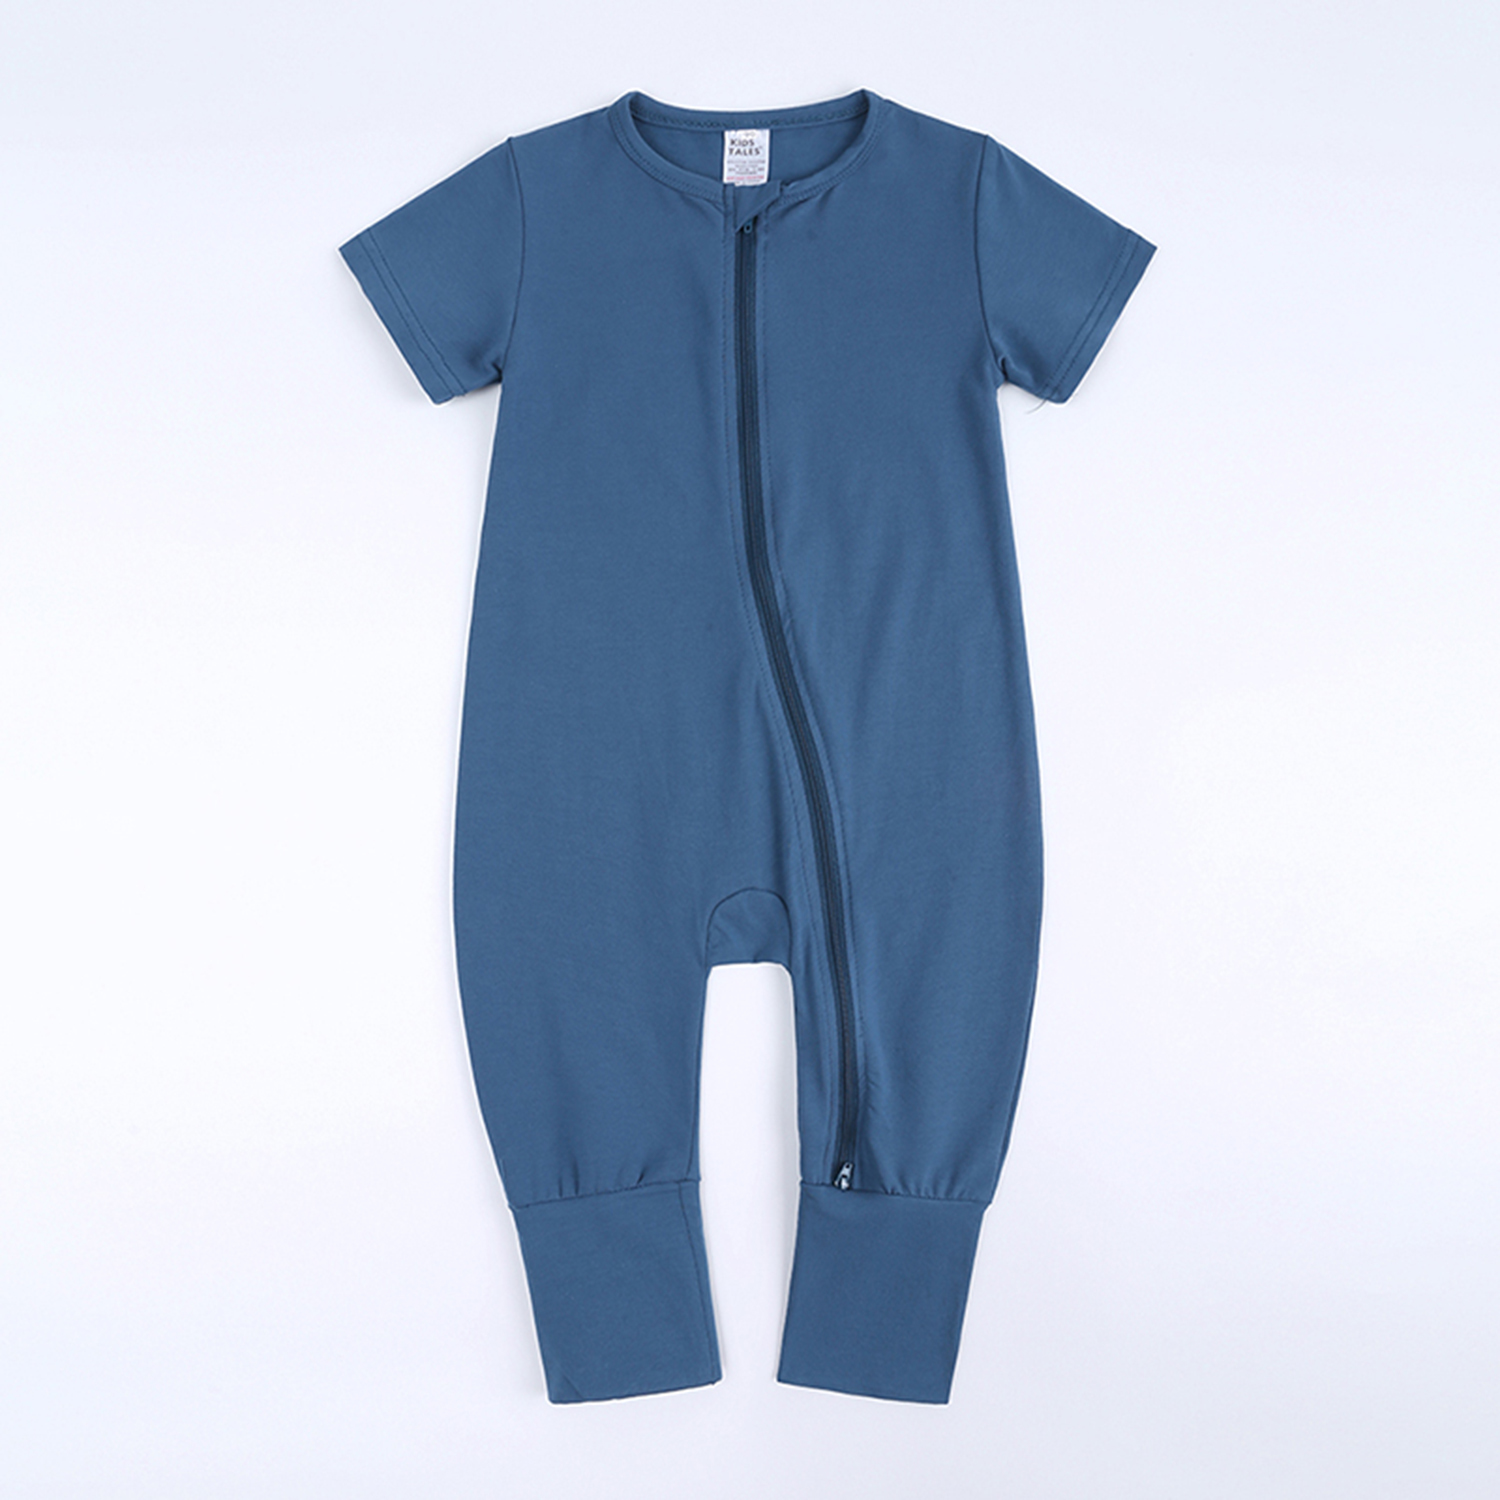 BEST BABY ROMPER BLUE 18-24 Mo Cotton Double Zipper Infant Bodysuit Sleeper Boy